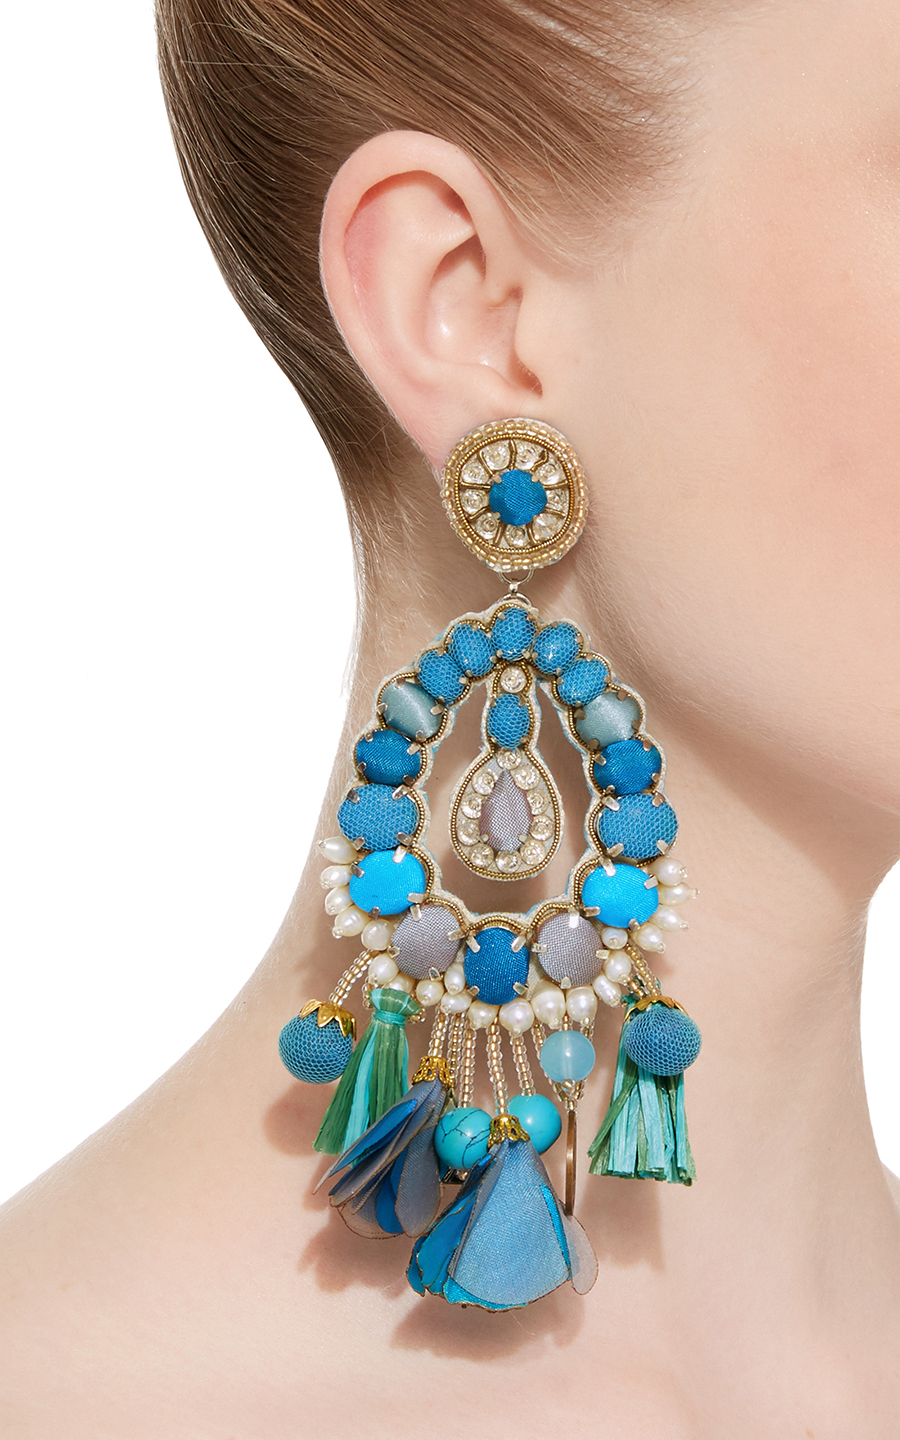 Blue Tear Drop Earrings with Tassels Ranjana Khan stylish clipon earrings